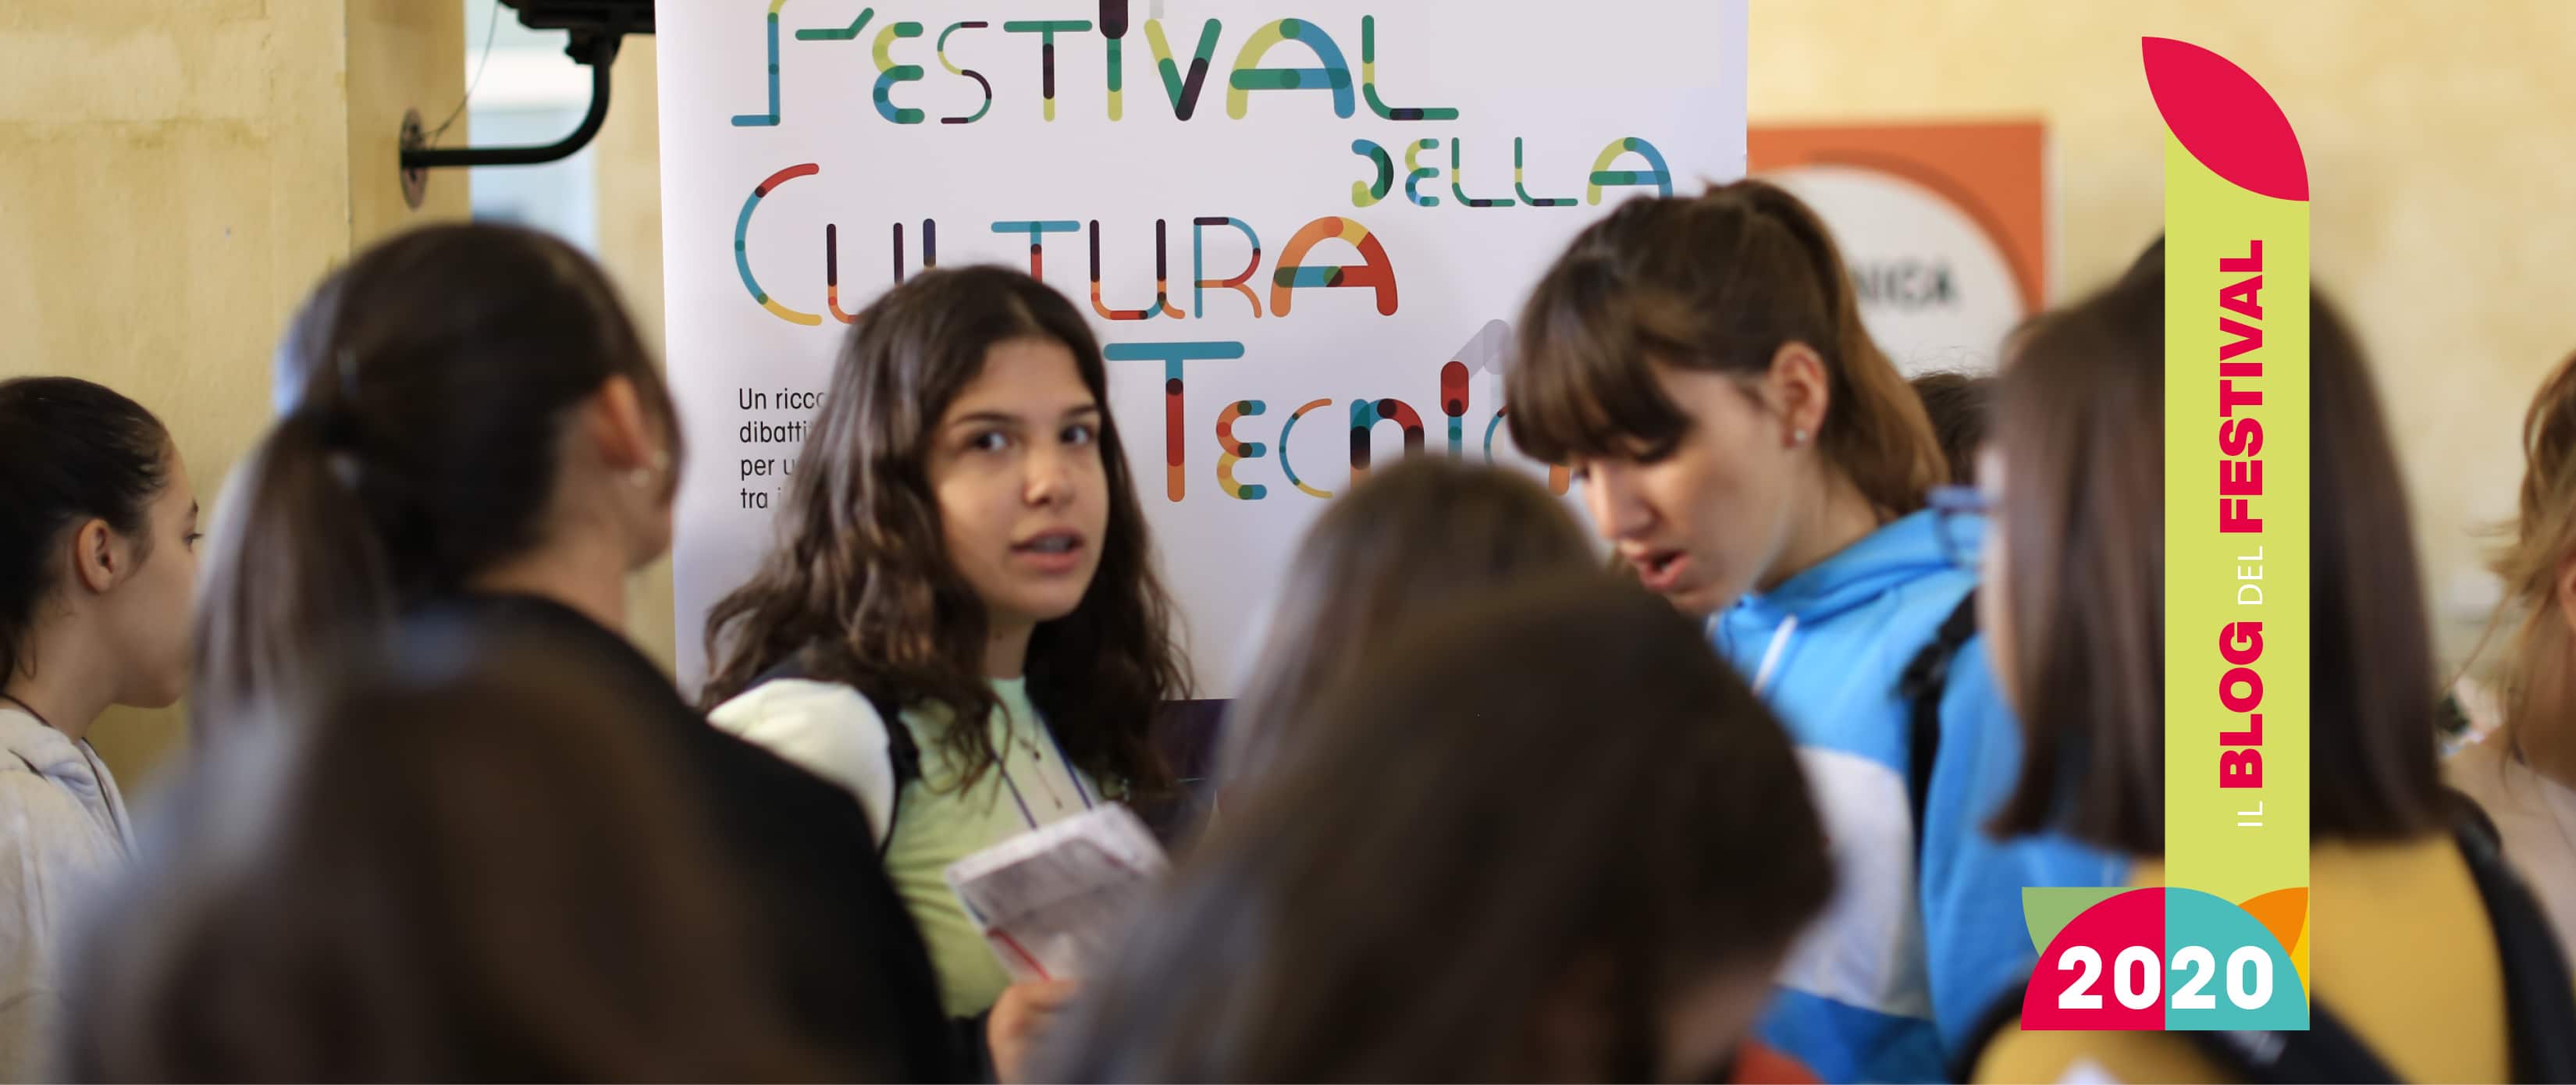 Il ‘contagio positivo’ del Festival della Cultura tecnica 2020